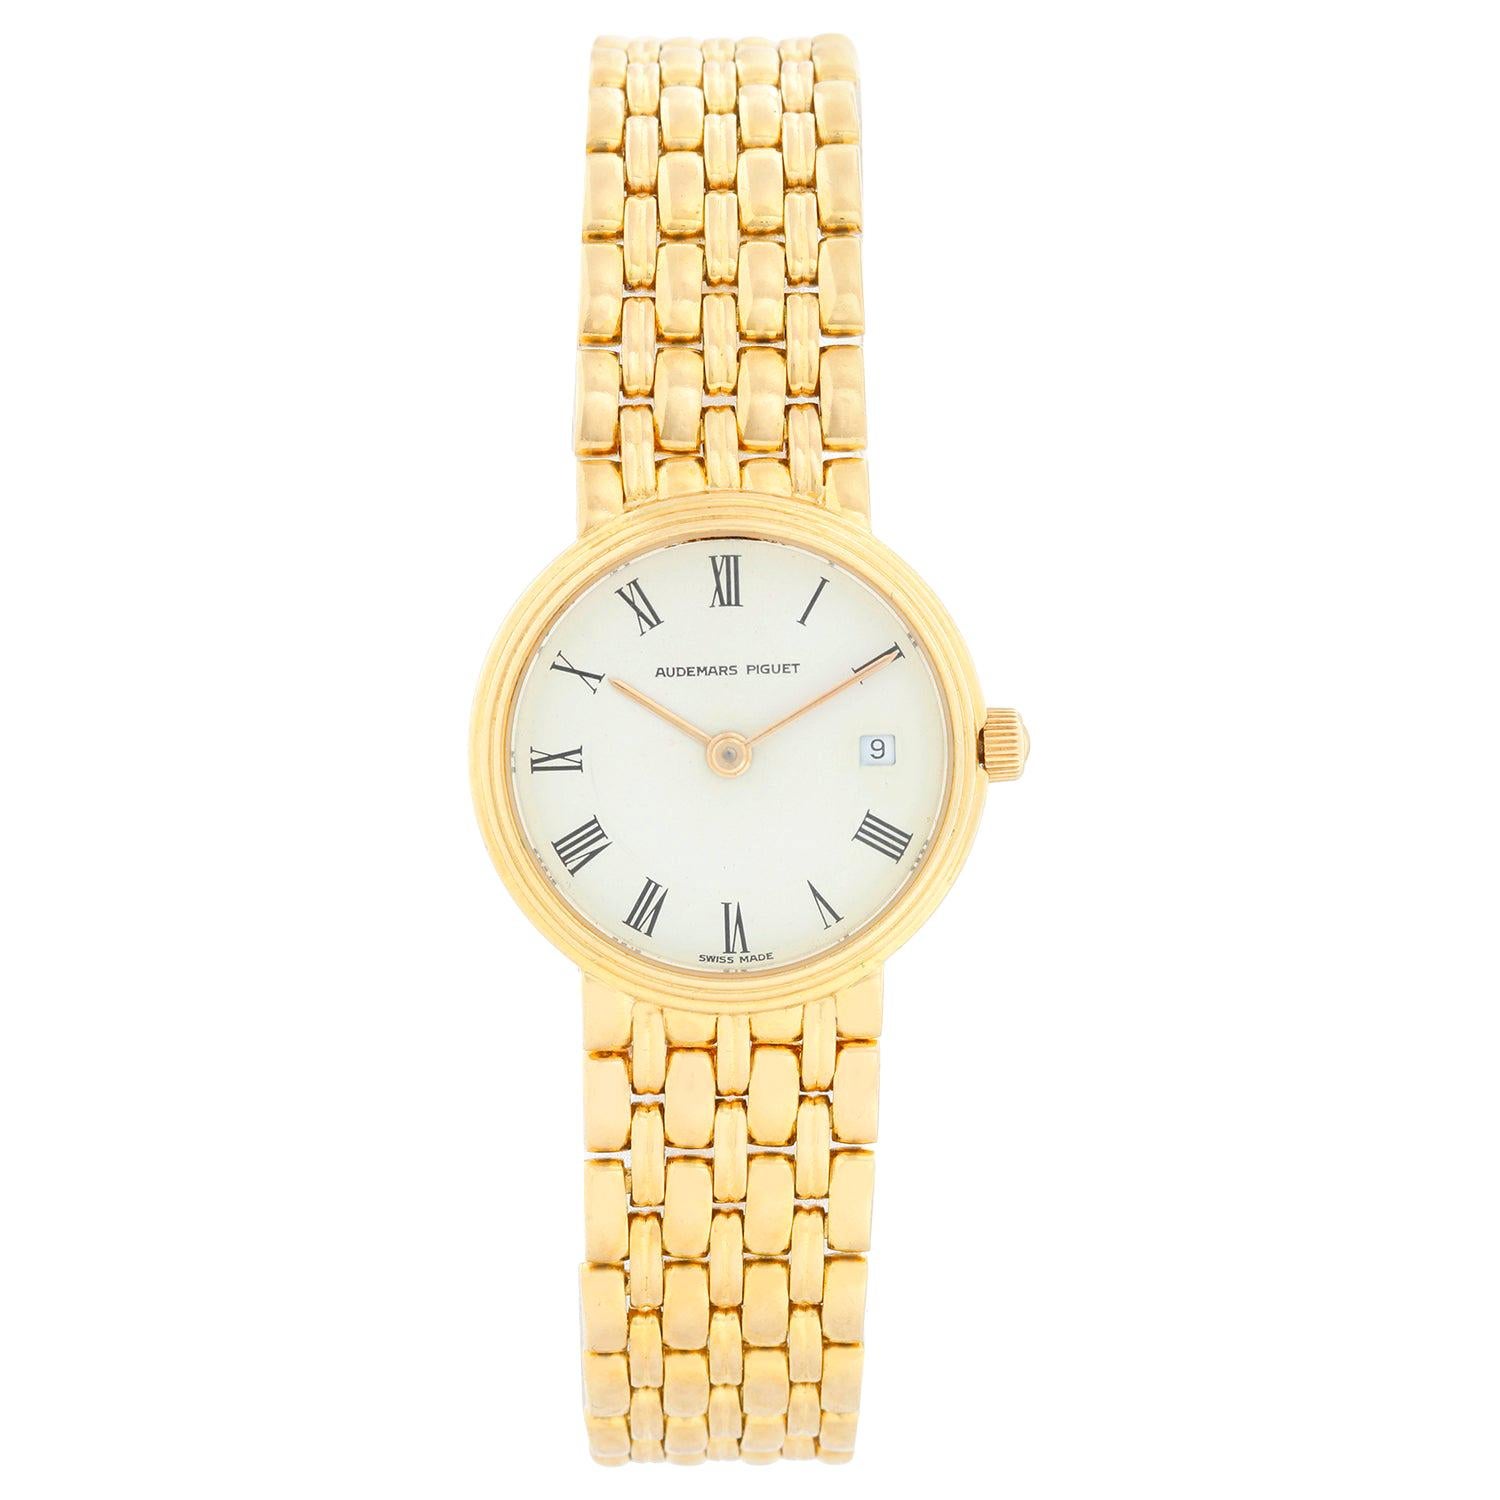 Vintage Audemars Piguet 18K Yellow Gold Ladies Watch